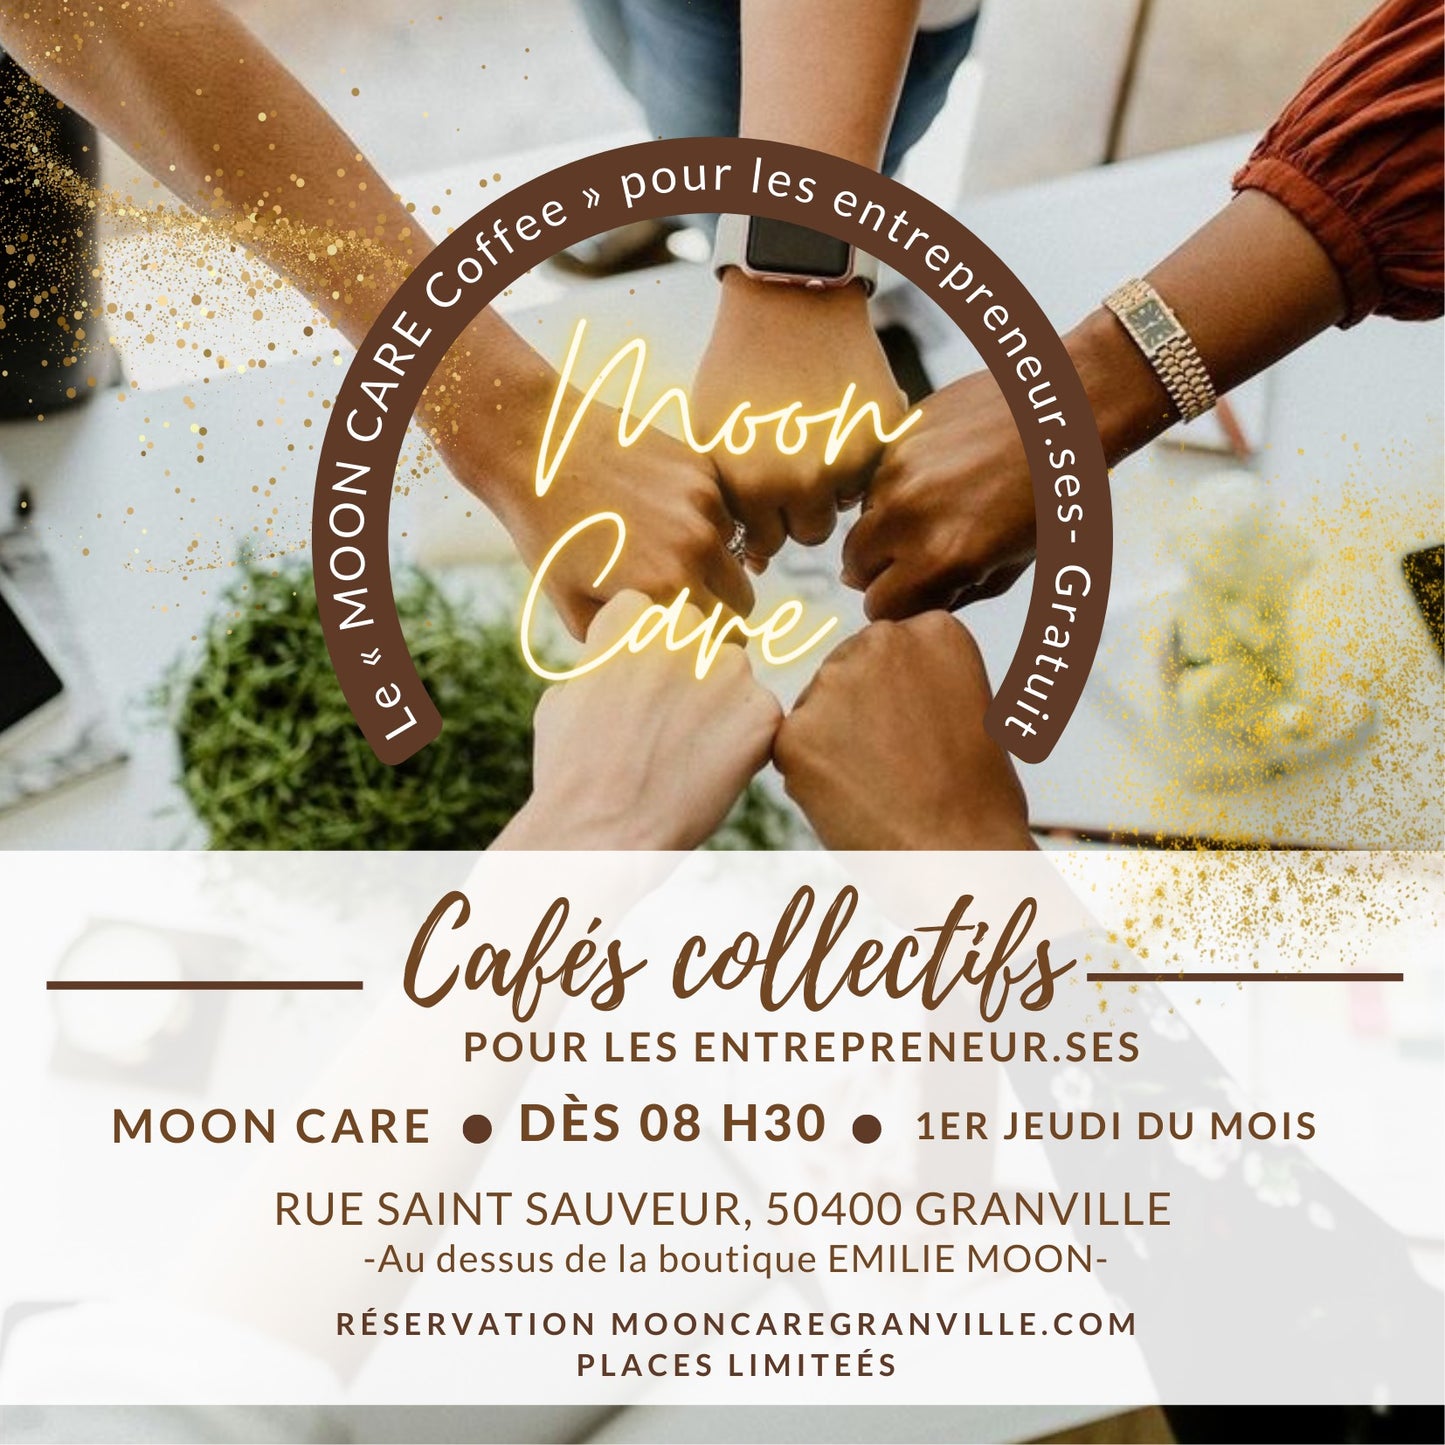 Le "Moon Care Coffee"  pour les entrepreneur.ses - Gratuit !